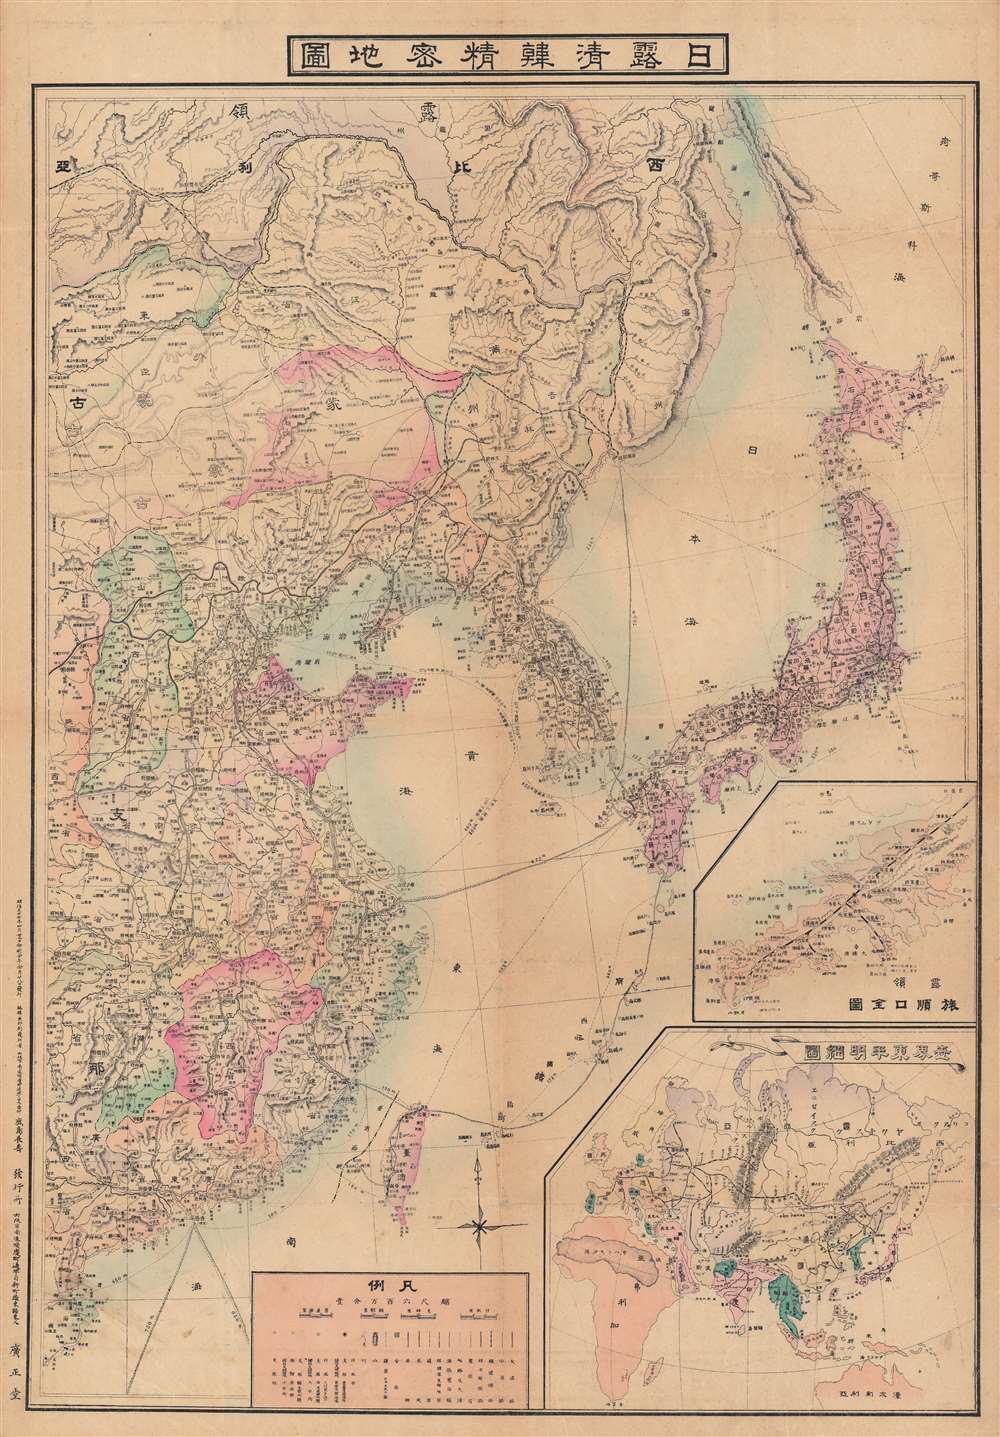 日露清韓精密地圖 / [Precise Map of Japan, Russia, China, and Korea]. - Main View